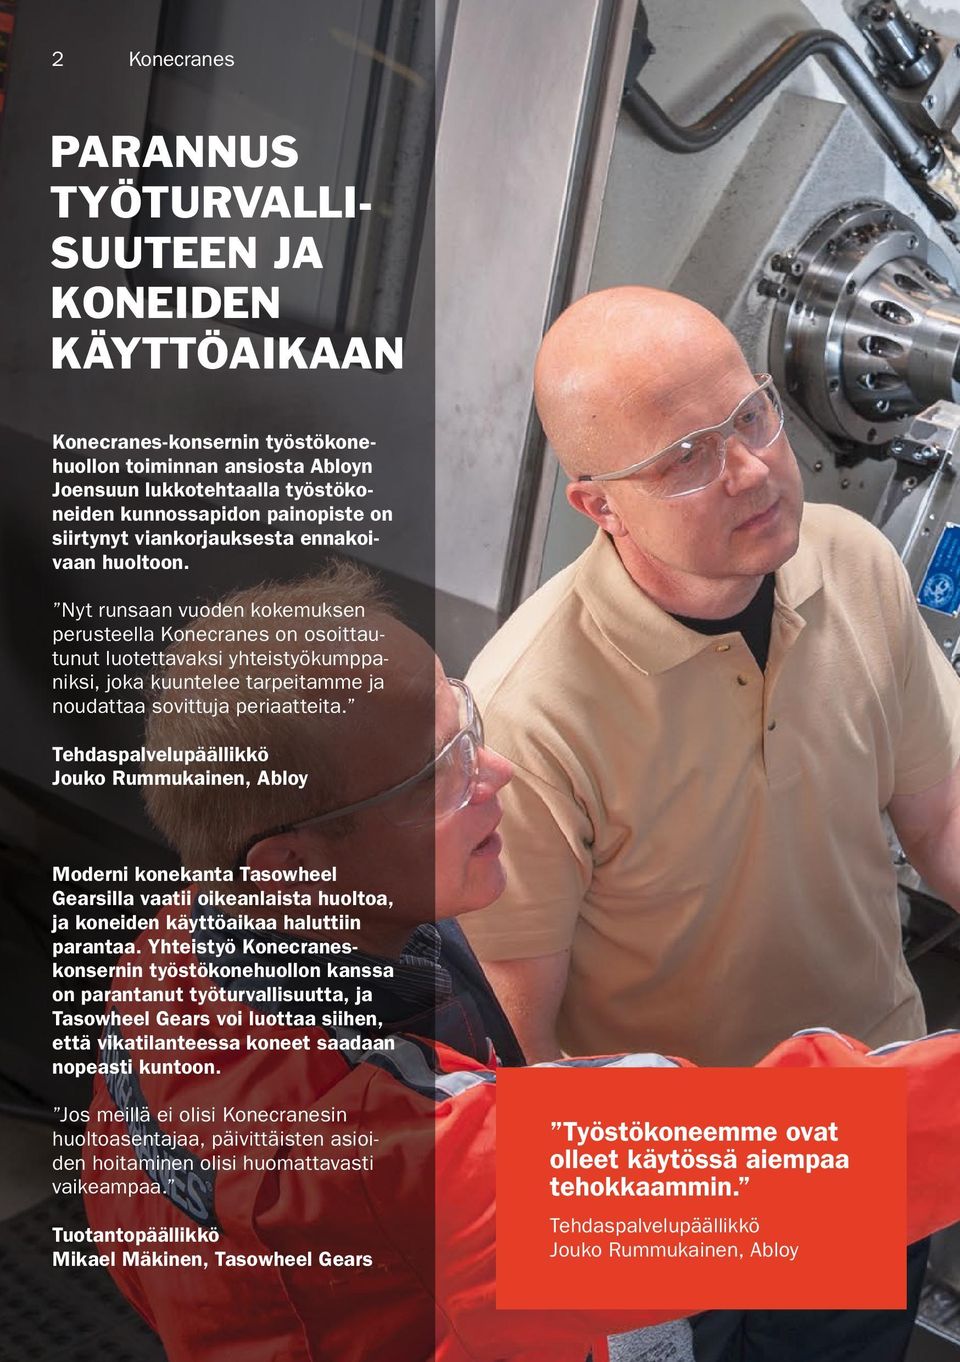 Tehdaspalvelupäällikkö Jouko Rummukainen, Abloy Moderni konekanta Tasowheel Gearsilla vaatii oikeanlaista huoltoa, ja koneiden käyttöaikaa haluttiin parantaa.